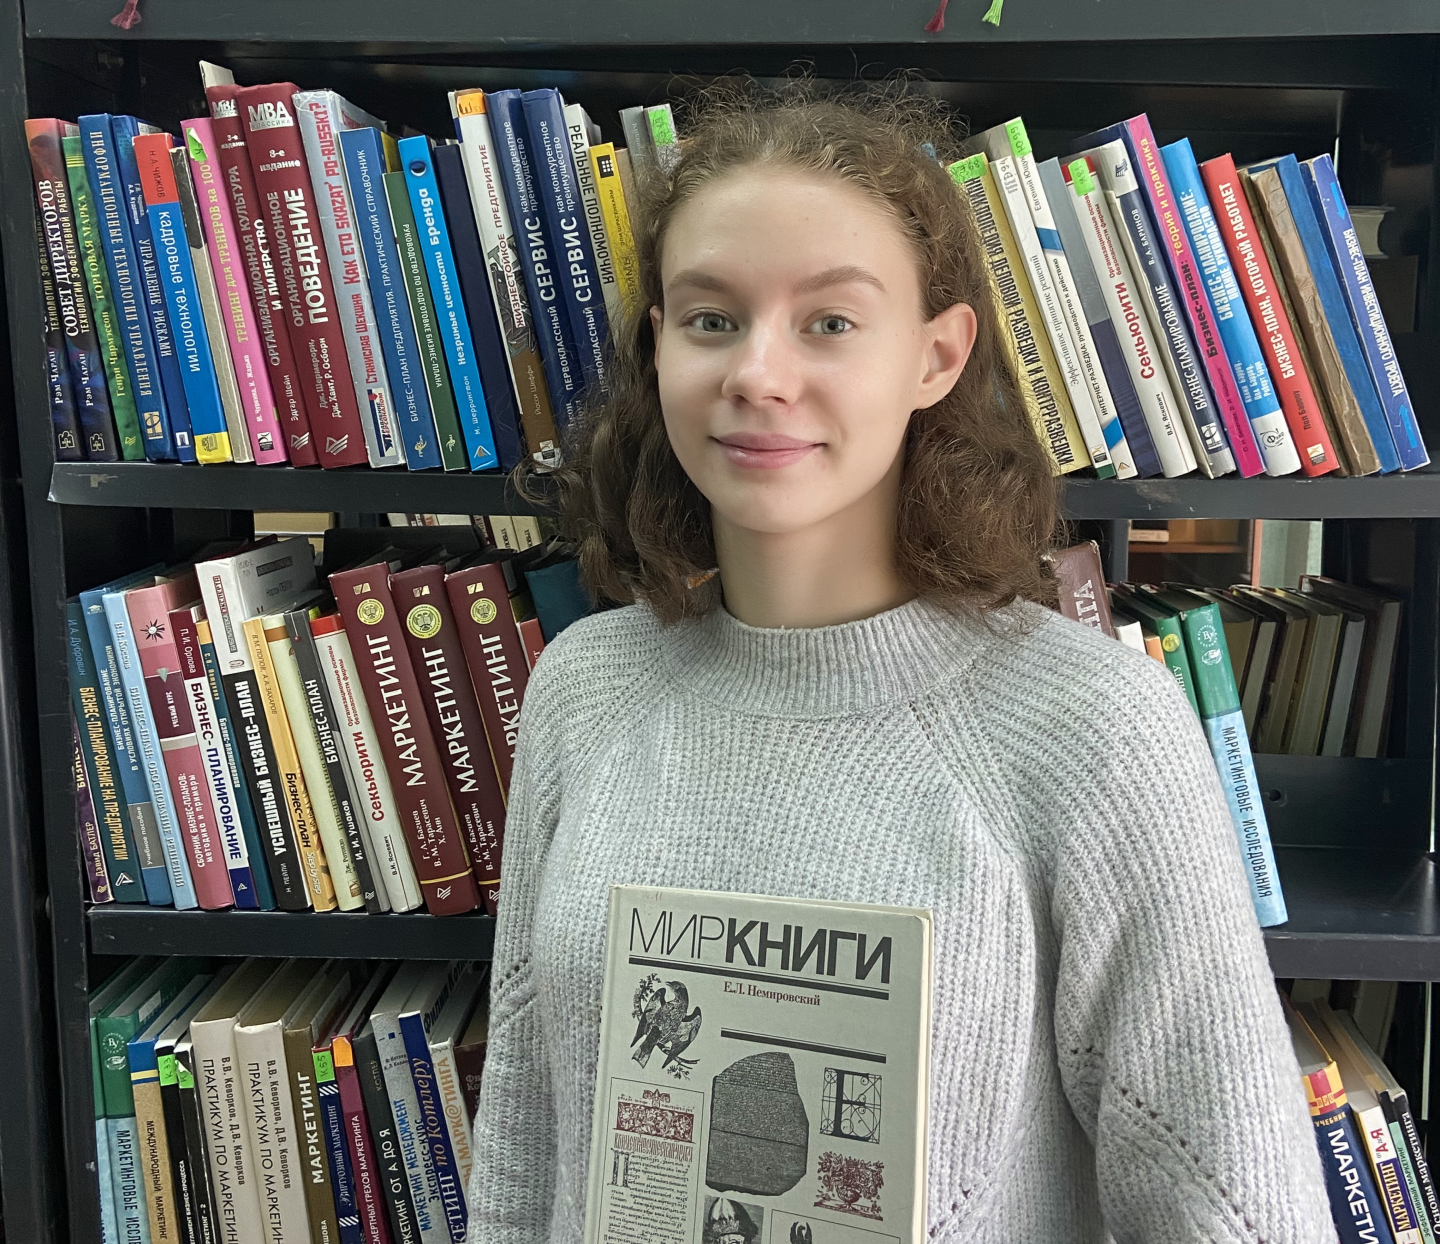 Софья Петрова, набрала 200 баллов по ЕГЭ: Для меня книга  - символ неторопливого чтения и наслаждения текстом